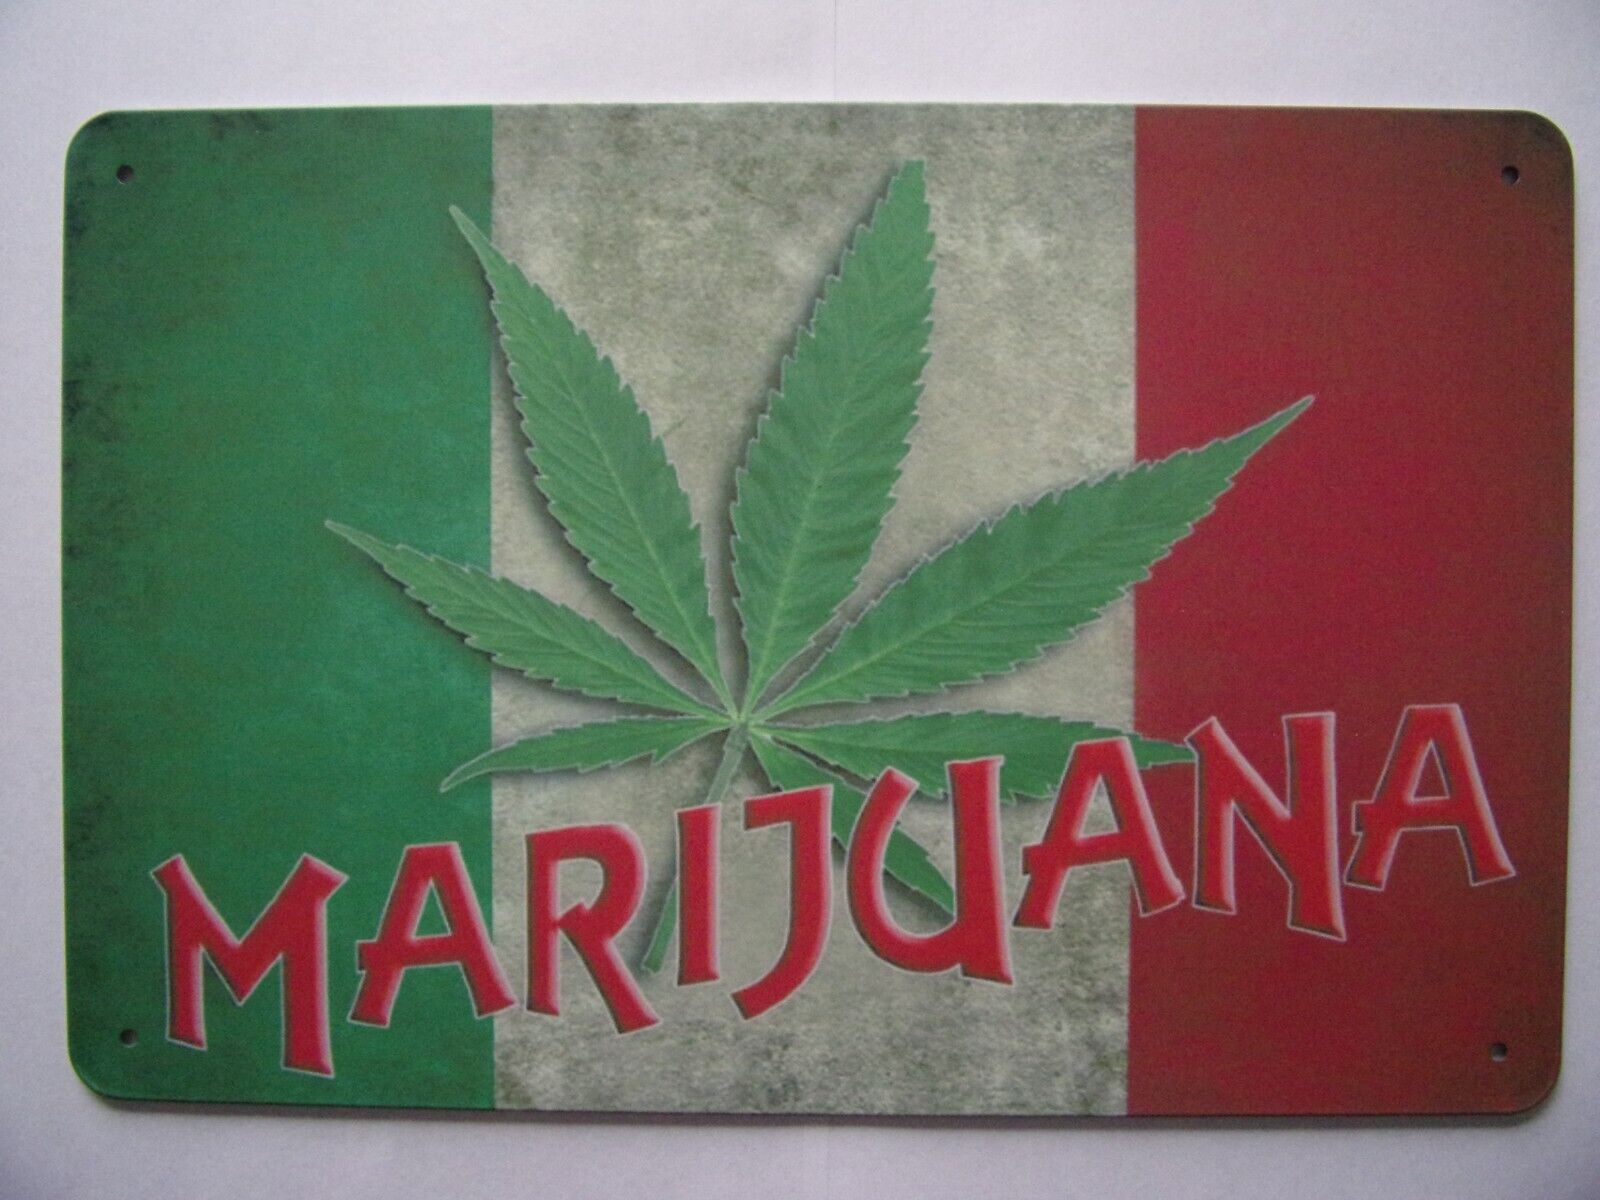 Marijuana Marihuana Pot Weed Kush Wall Metal Tin Sign 8x12 inch